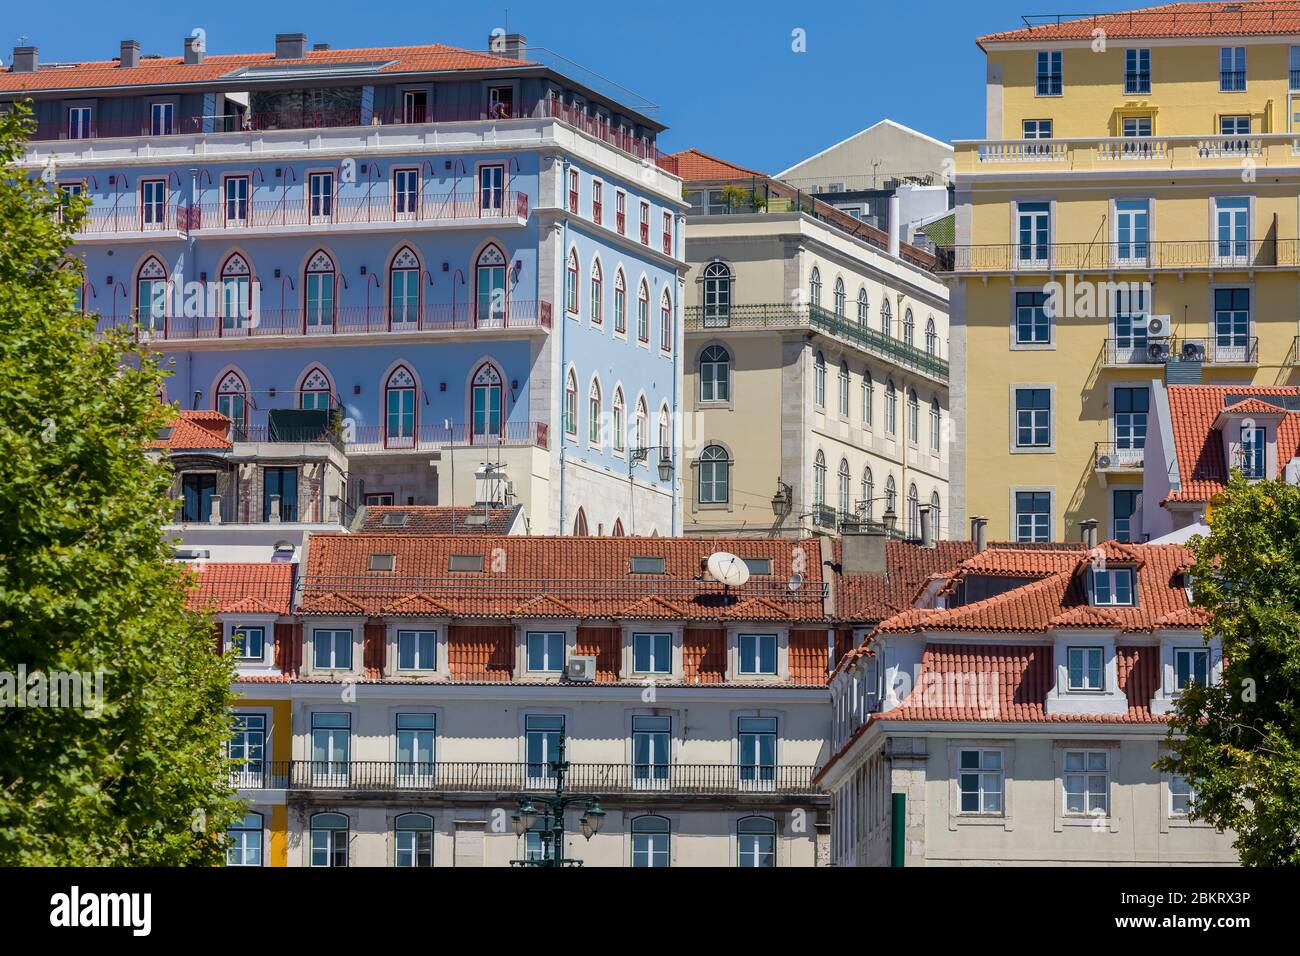 Portugal, Lisbonne, Baixa, bâtiments sur le Tage Banque D'Images